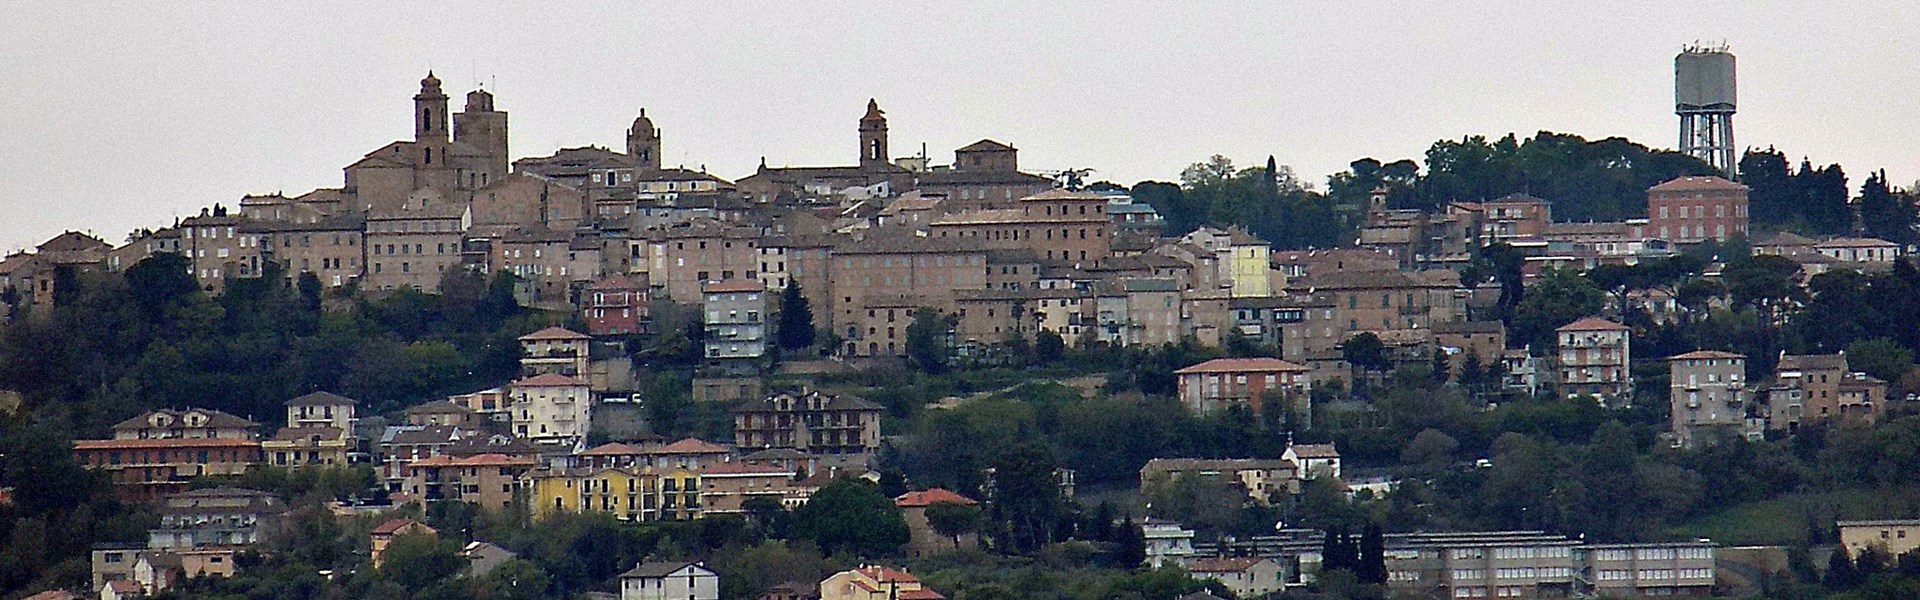 Sant'Elpidio a Mare - Panorama